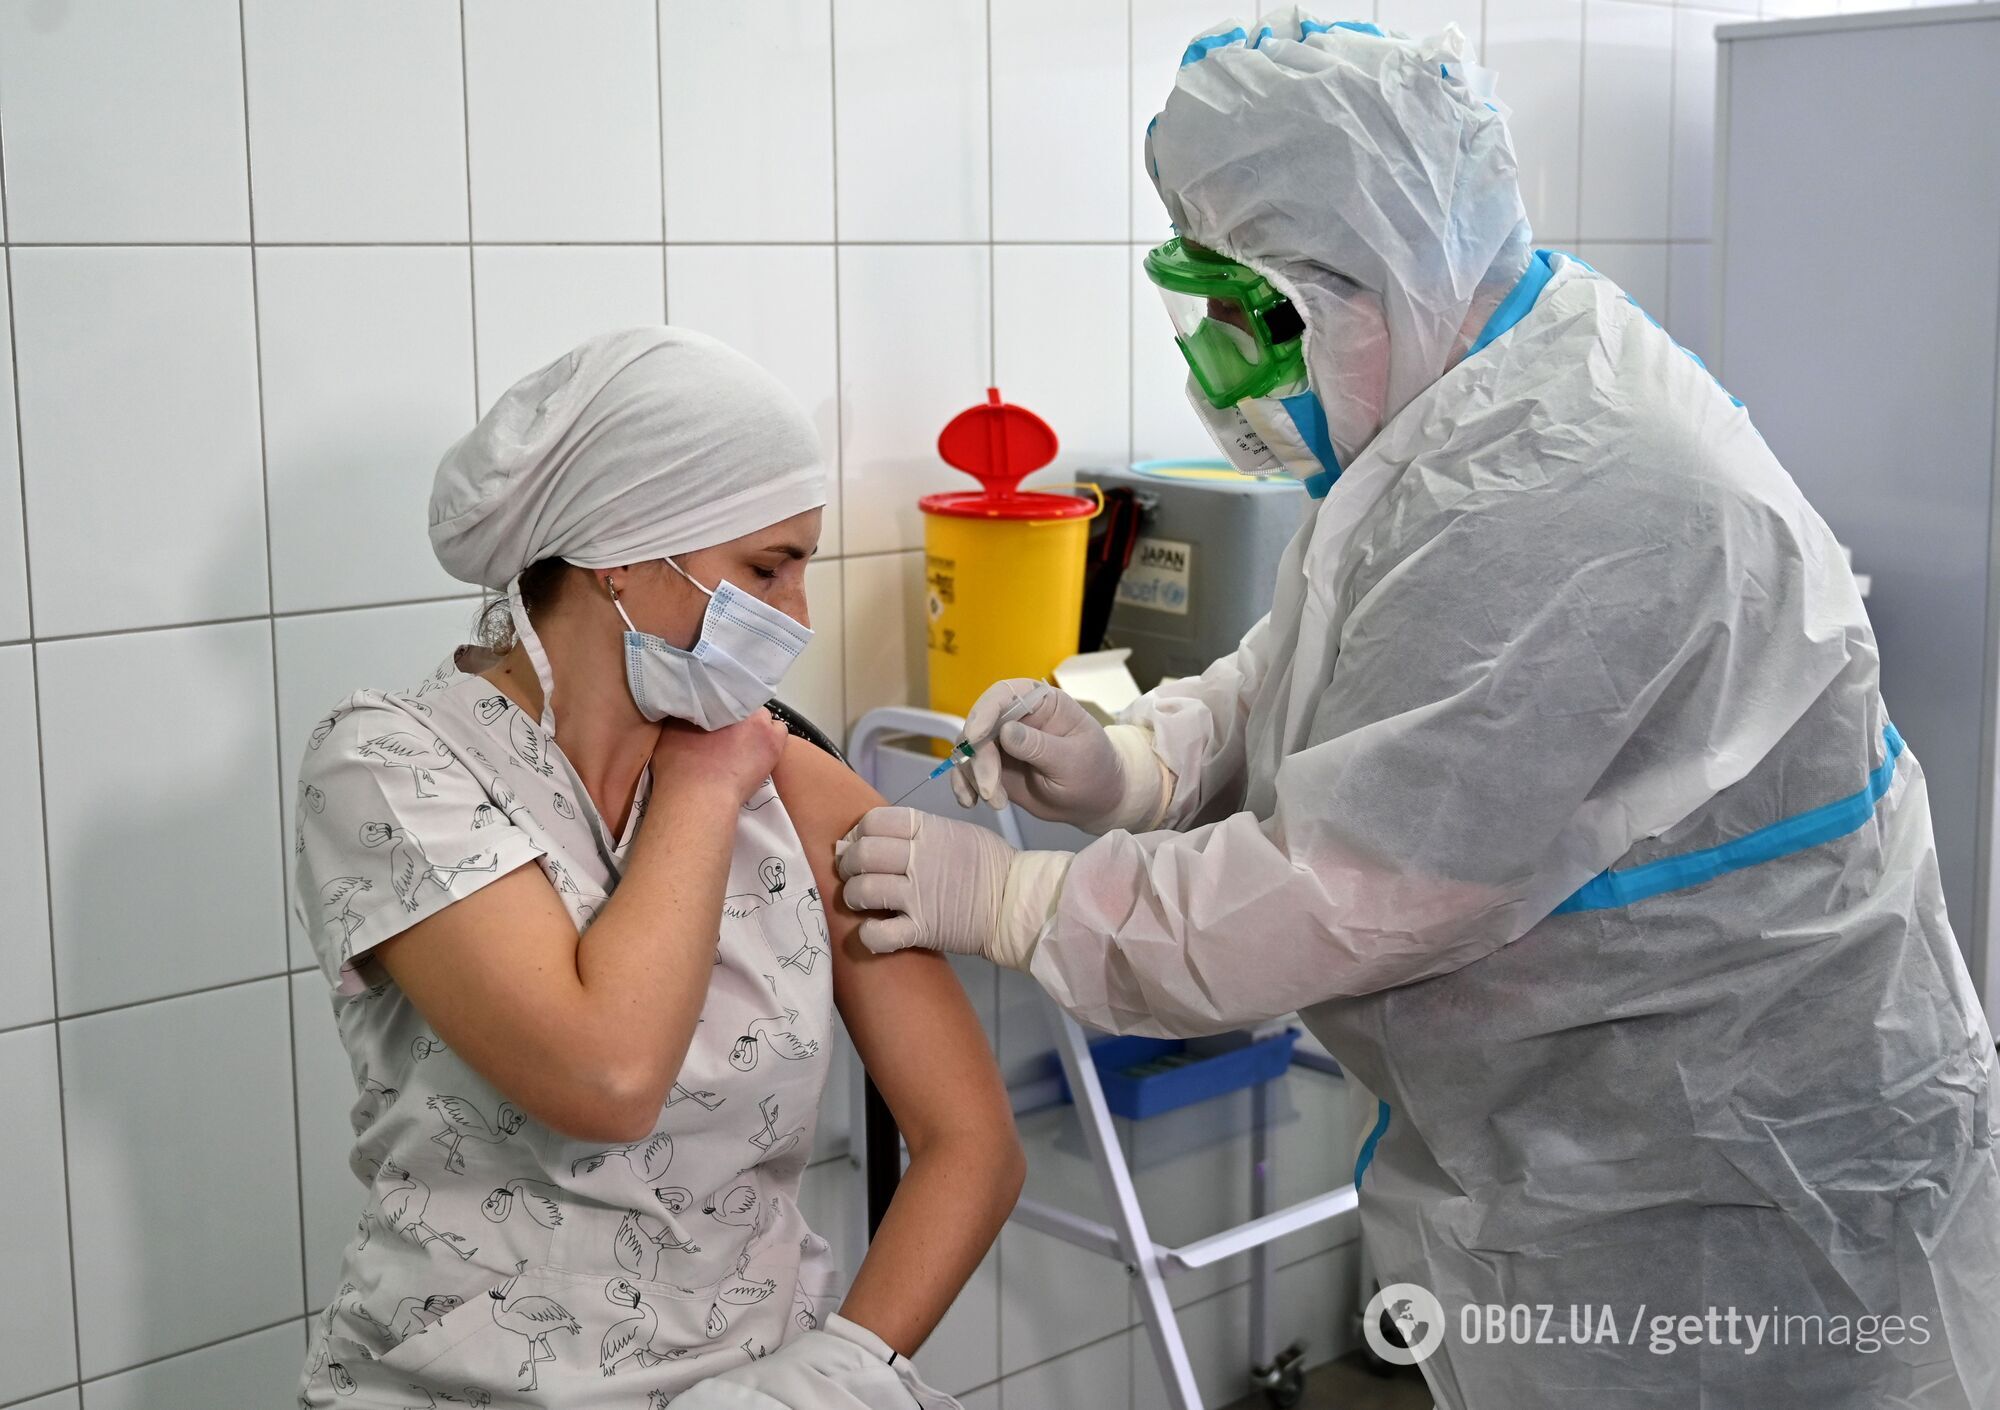 Вакцинация против коронавируса стартовала в Украине 24 февраля 2021 года